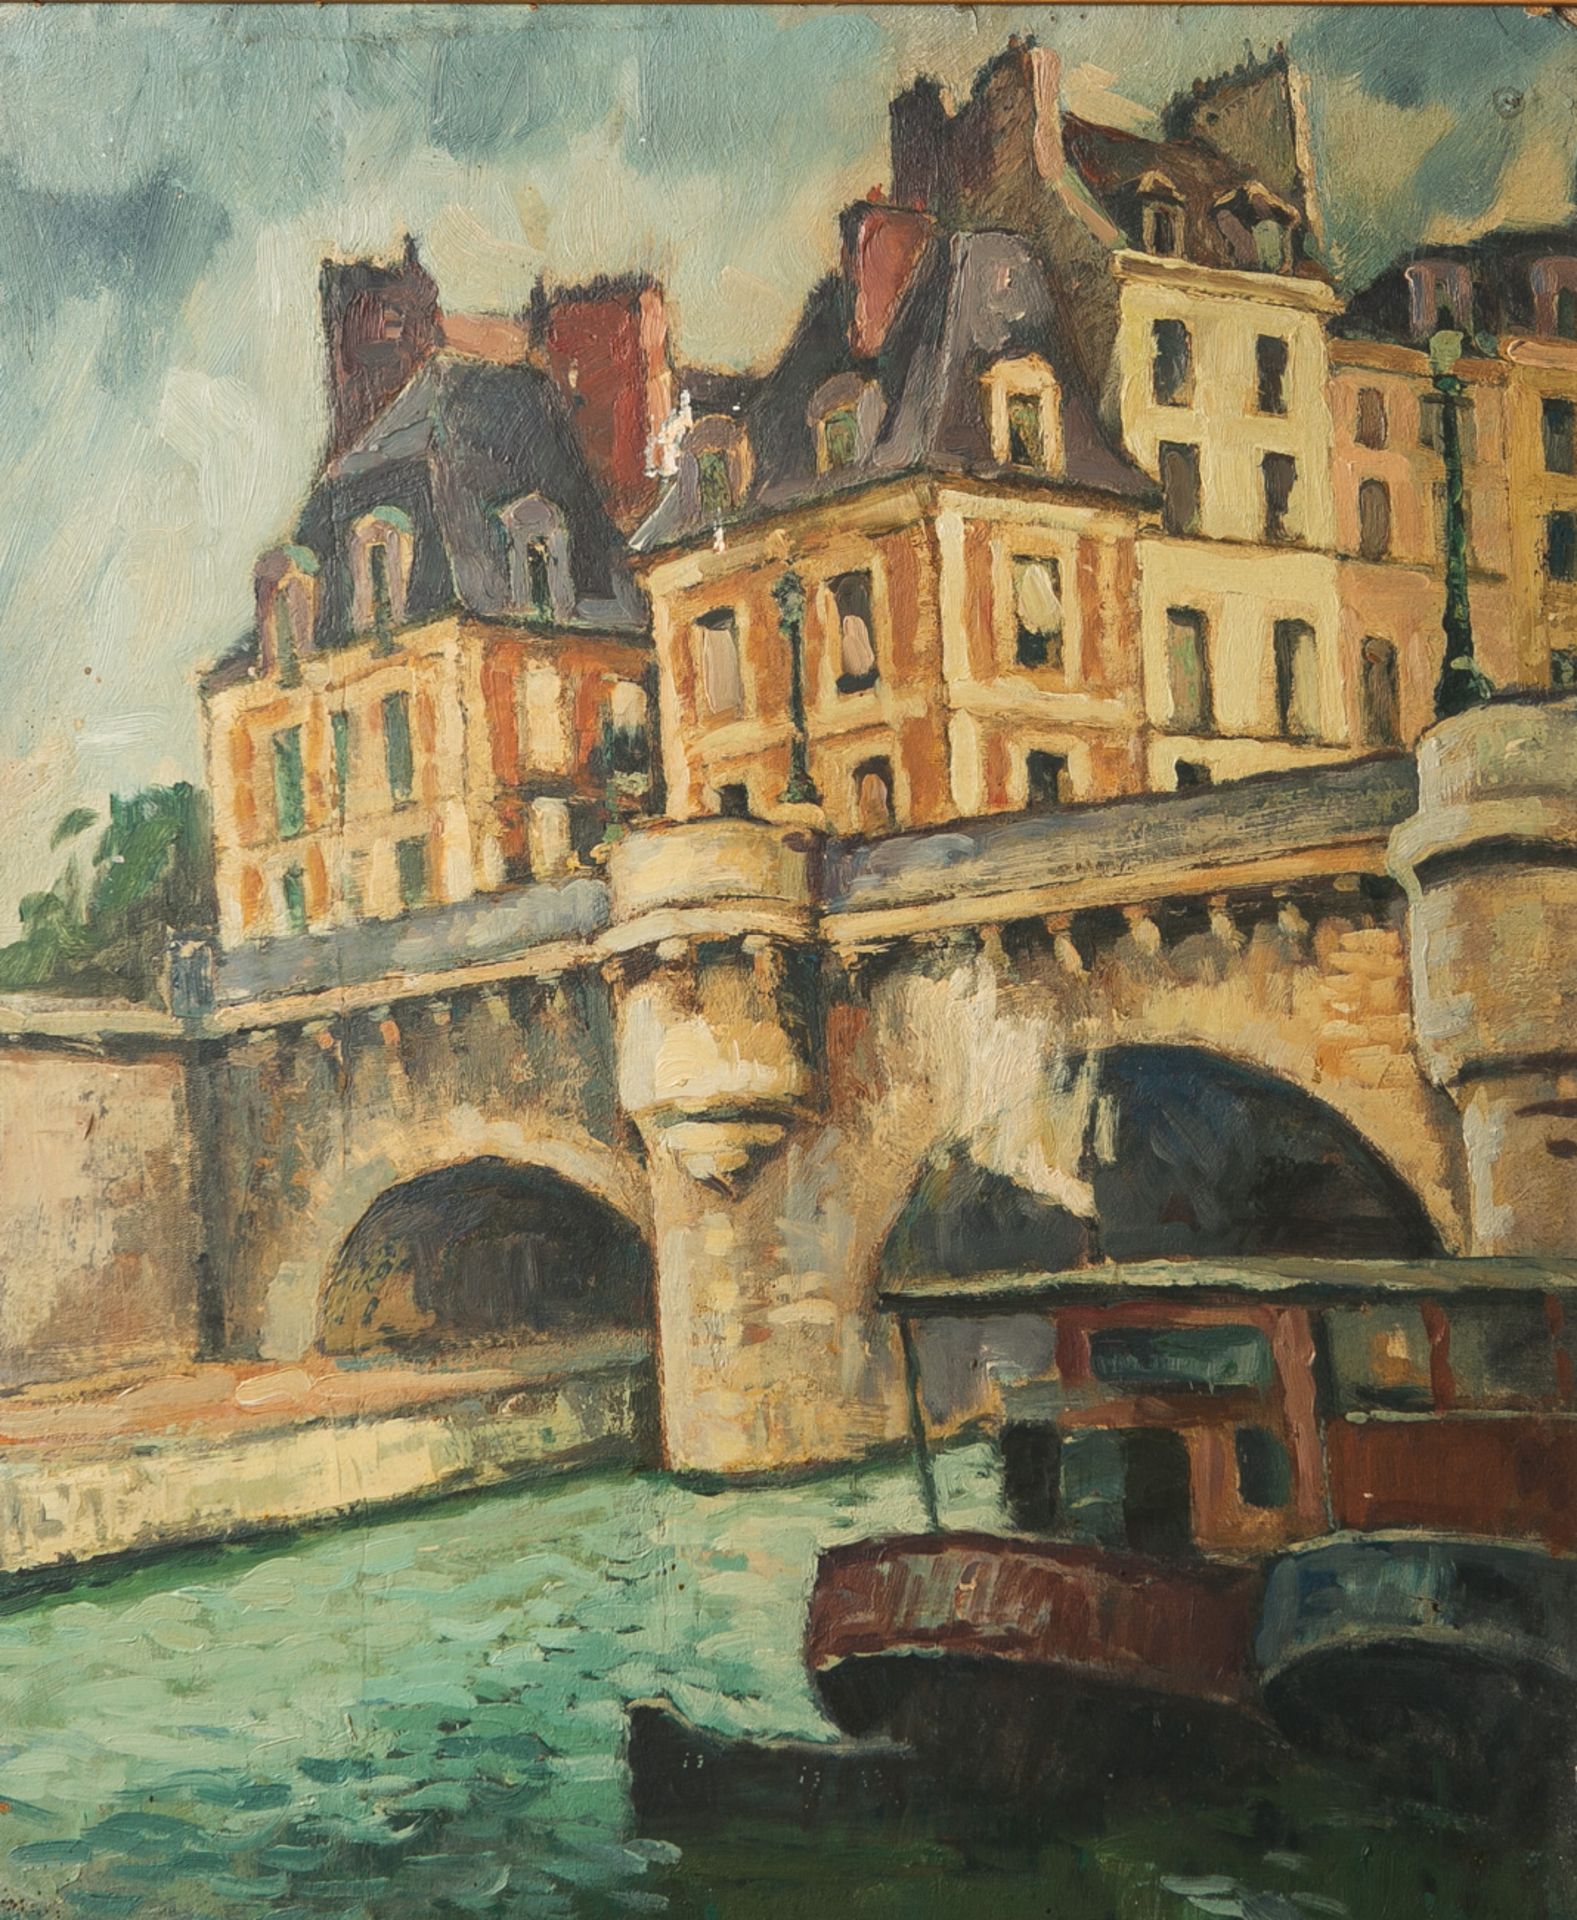 Unbekannter Künstler (19./20. Jahrhundert), Stadtansicht m. einer Brücke über einen Kanal,